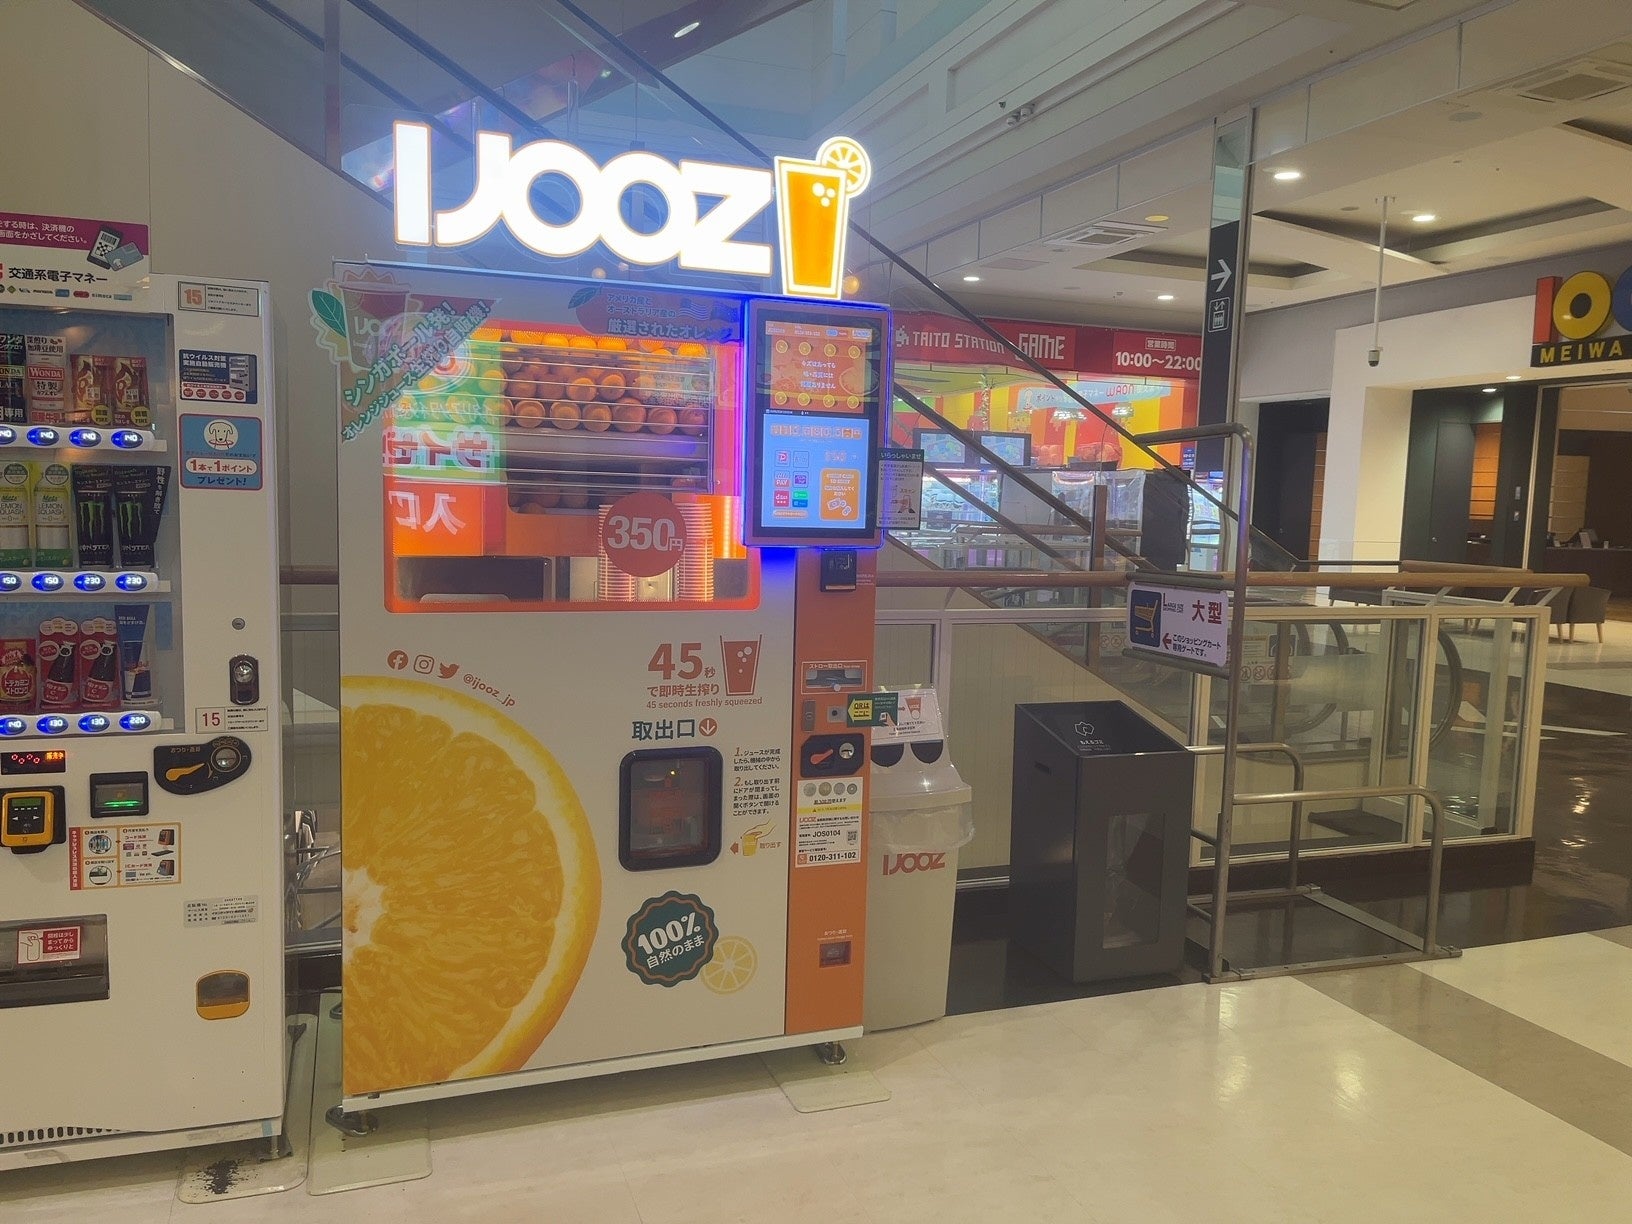 【三重県多気郡】イオンモール明和で350円搾りたてオレンジジュース自販機IJOOZが稼働開始！